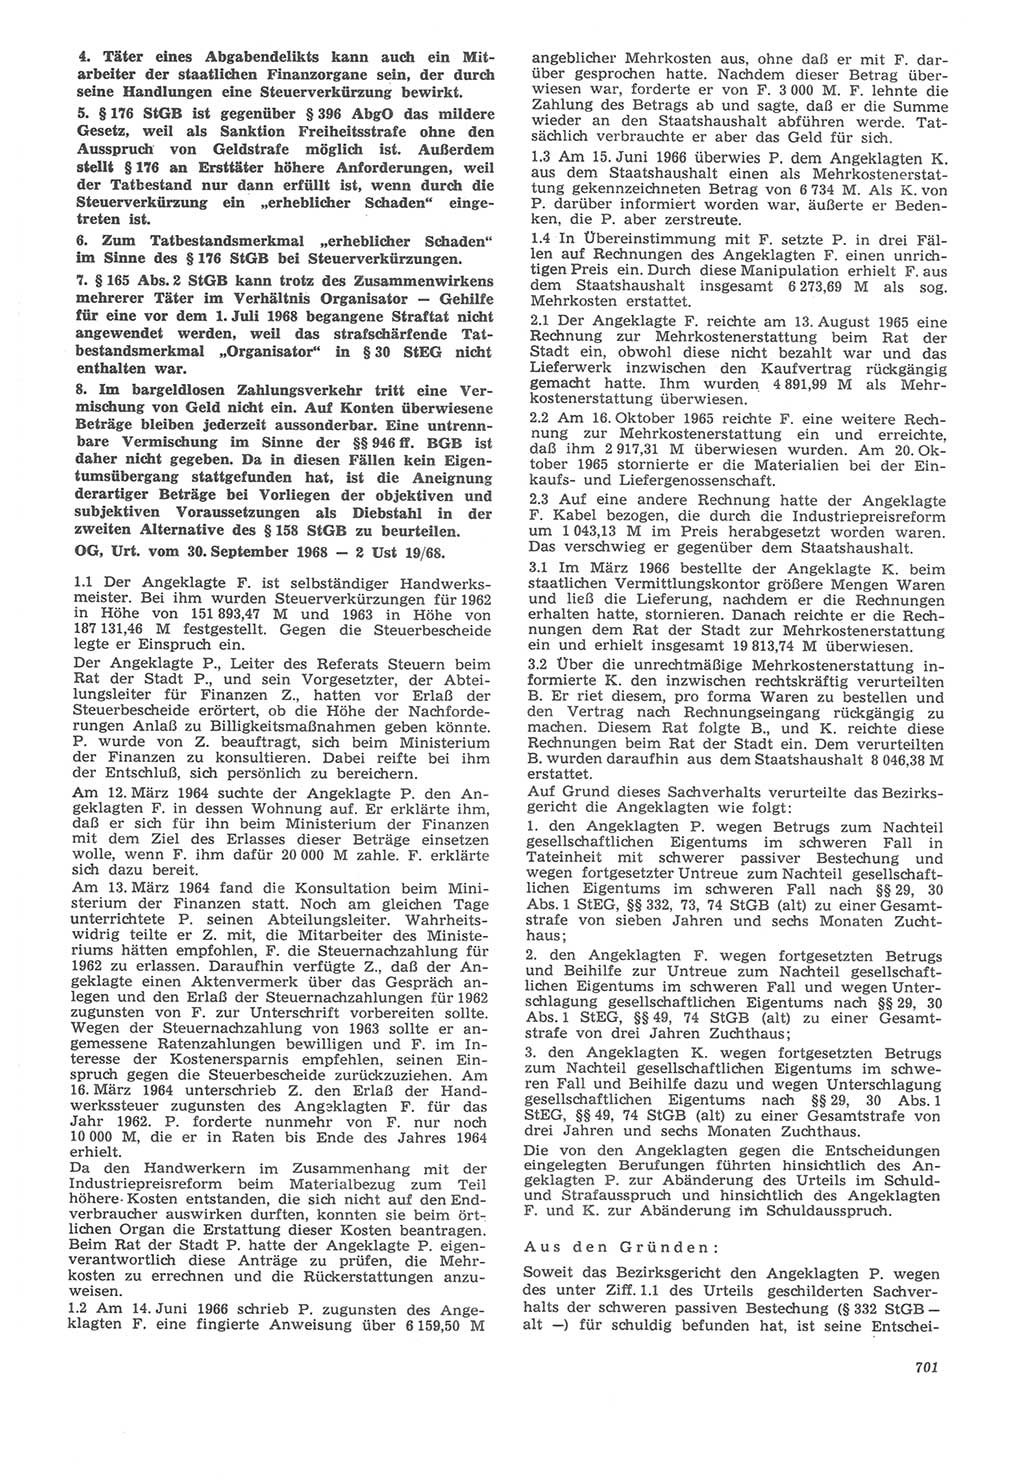 Neue Justiz (NJ), Zeitschrift für Recht und Rechtswissenschaft [Deutsche Demokratische Republik (DDR)], 22. Jahrgang 1968, Seite 701 (NJ DDR 1968, S. 701)